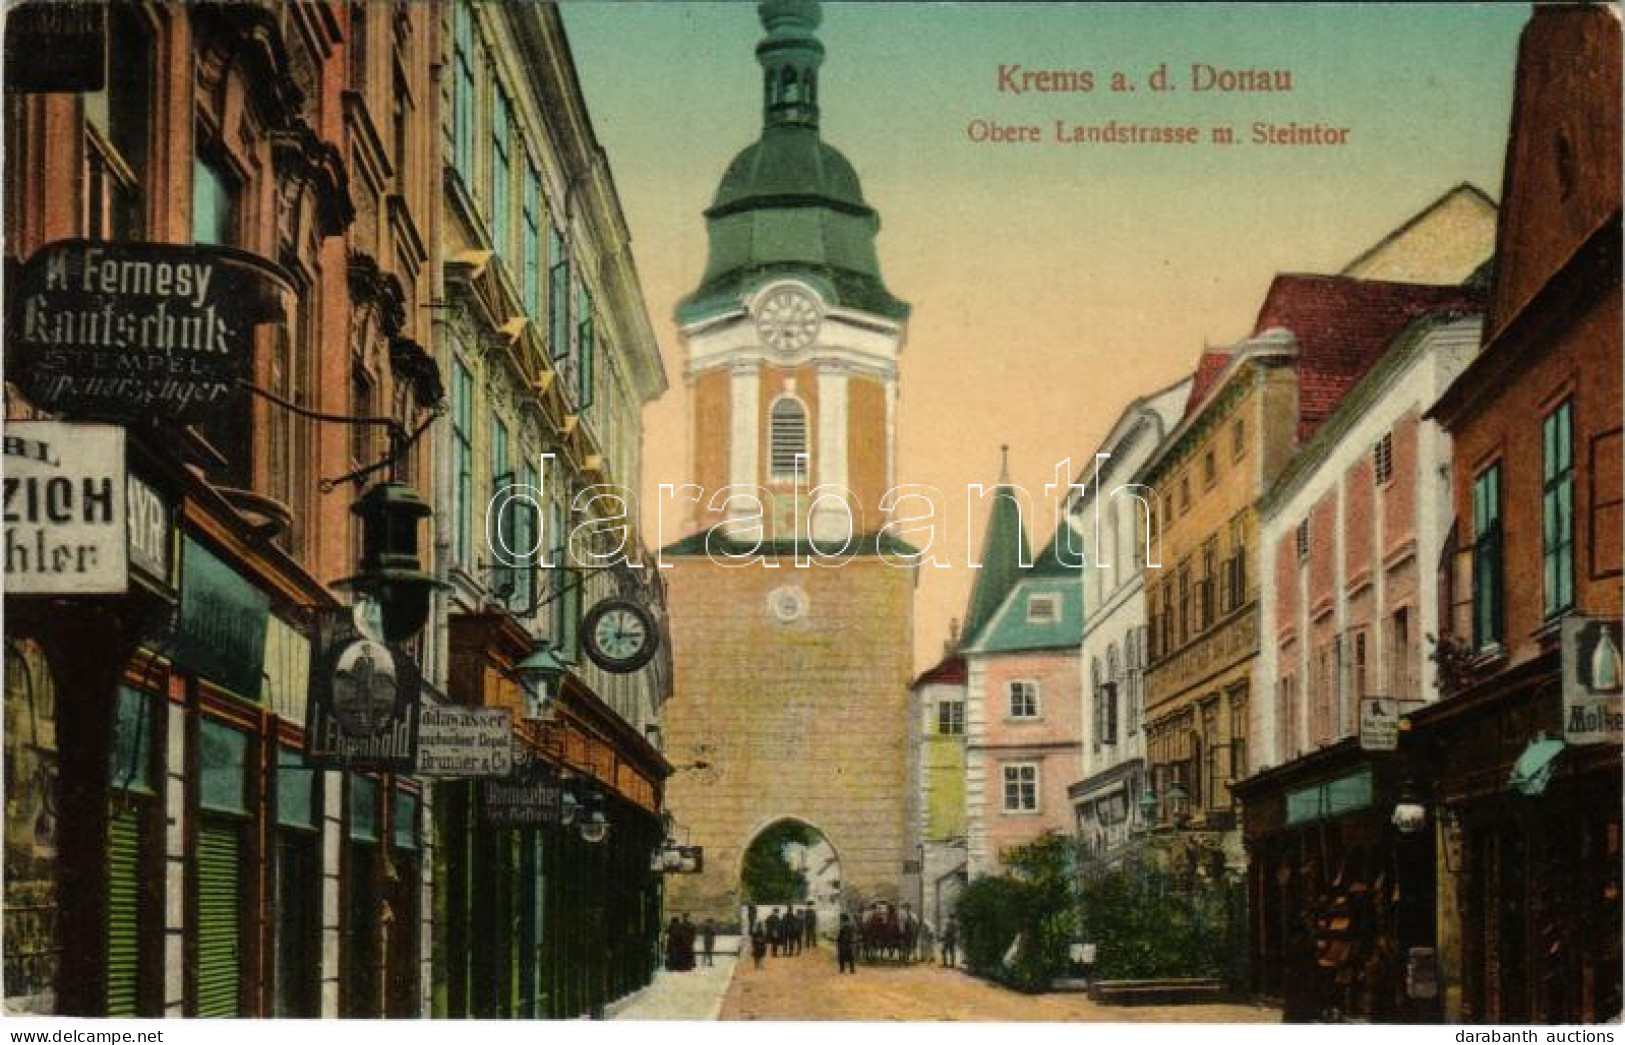 T2 1912 Krems An Der Donau, Obere Landstrasse M. Steintor / Street View, Gate, Shop Of K. Fernesy - Unclassified